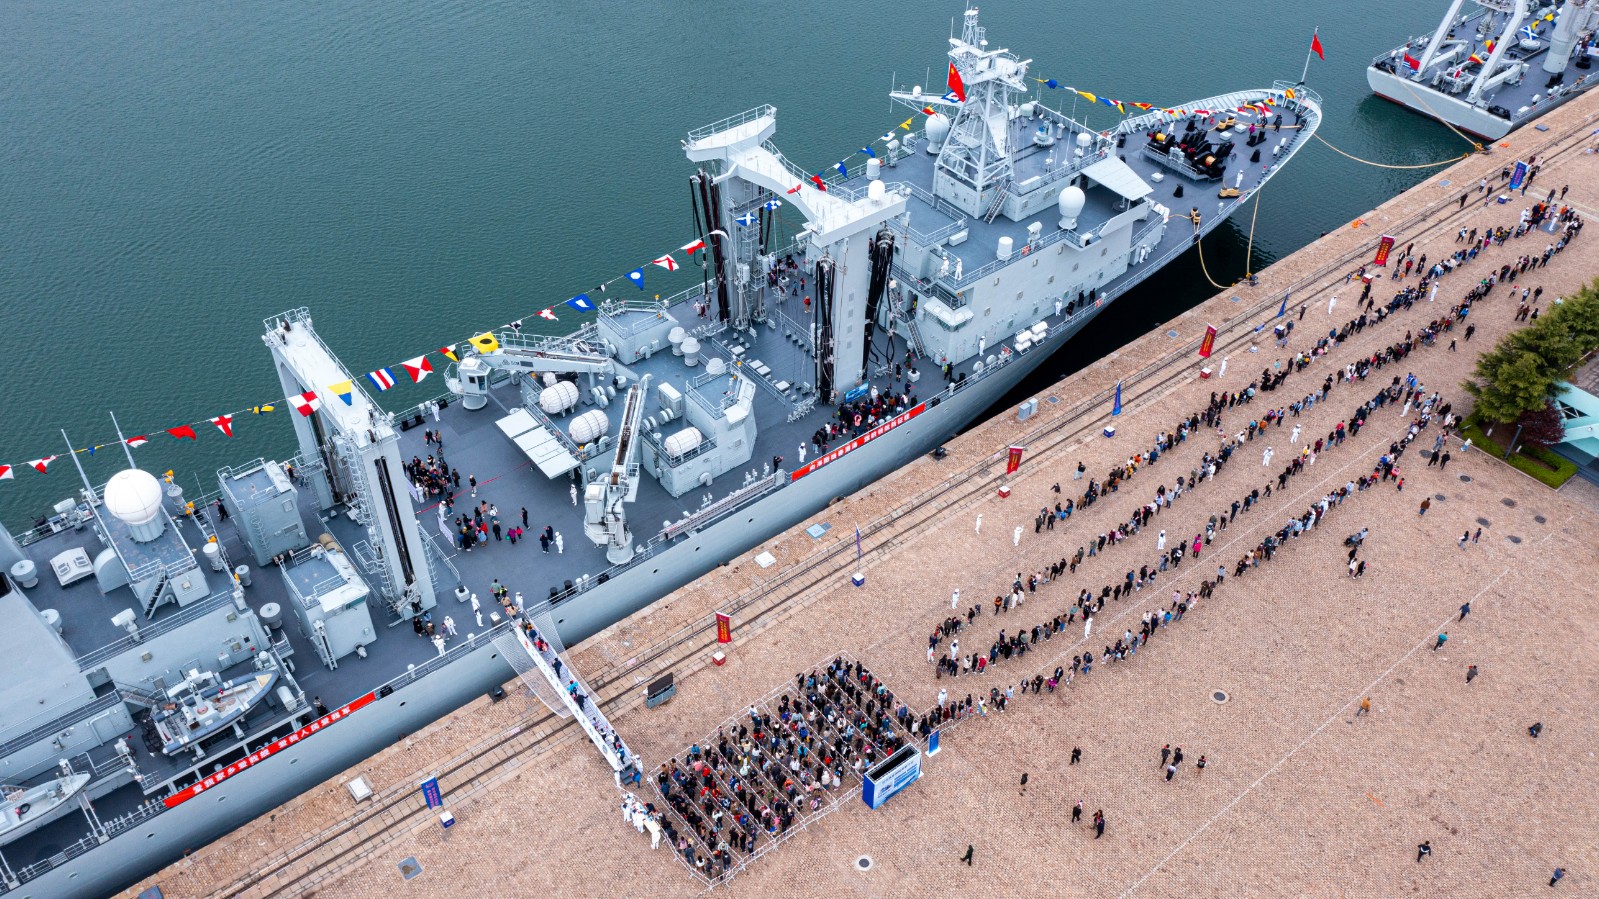 124开封舰正式入列海军图片